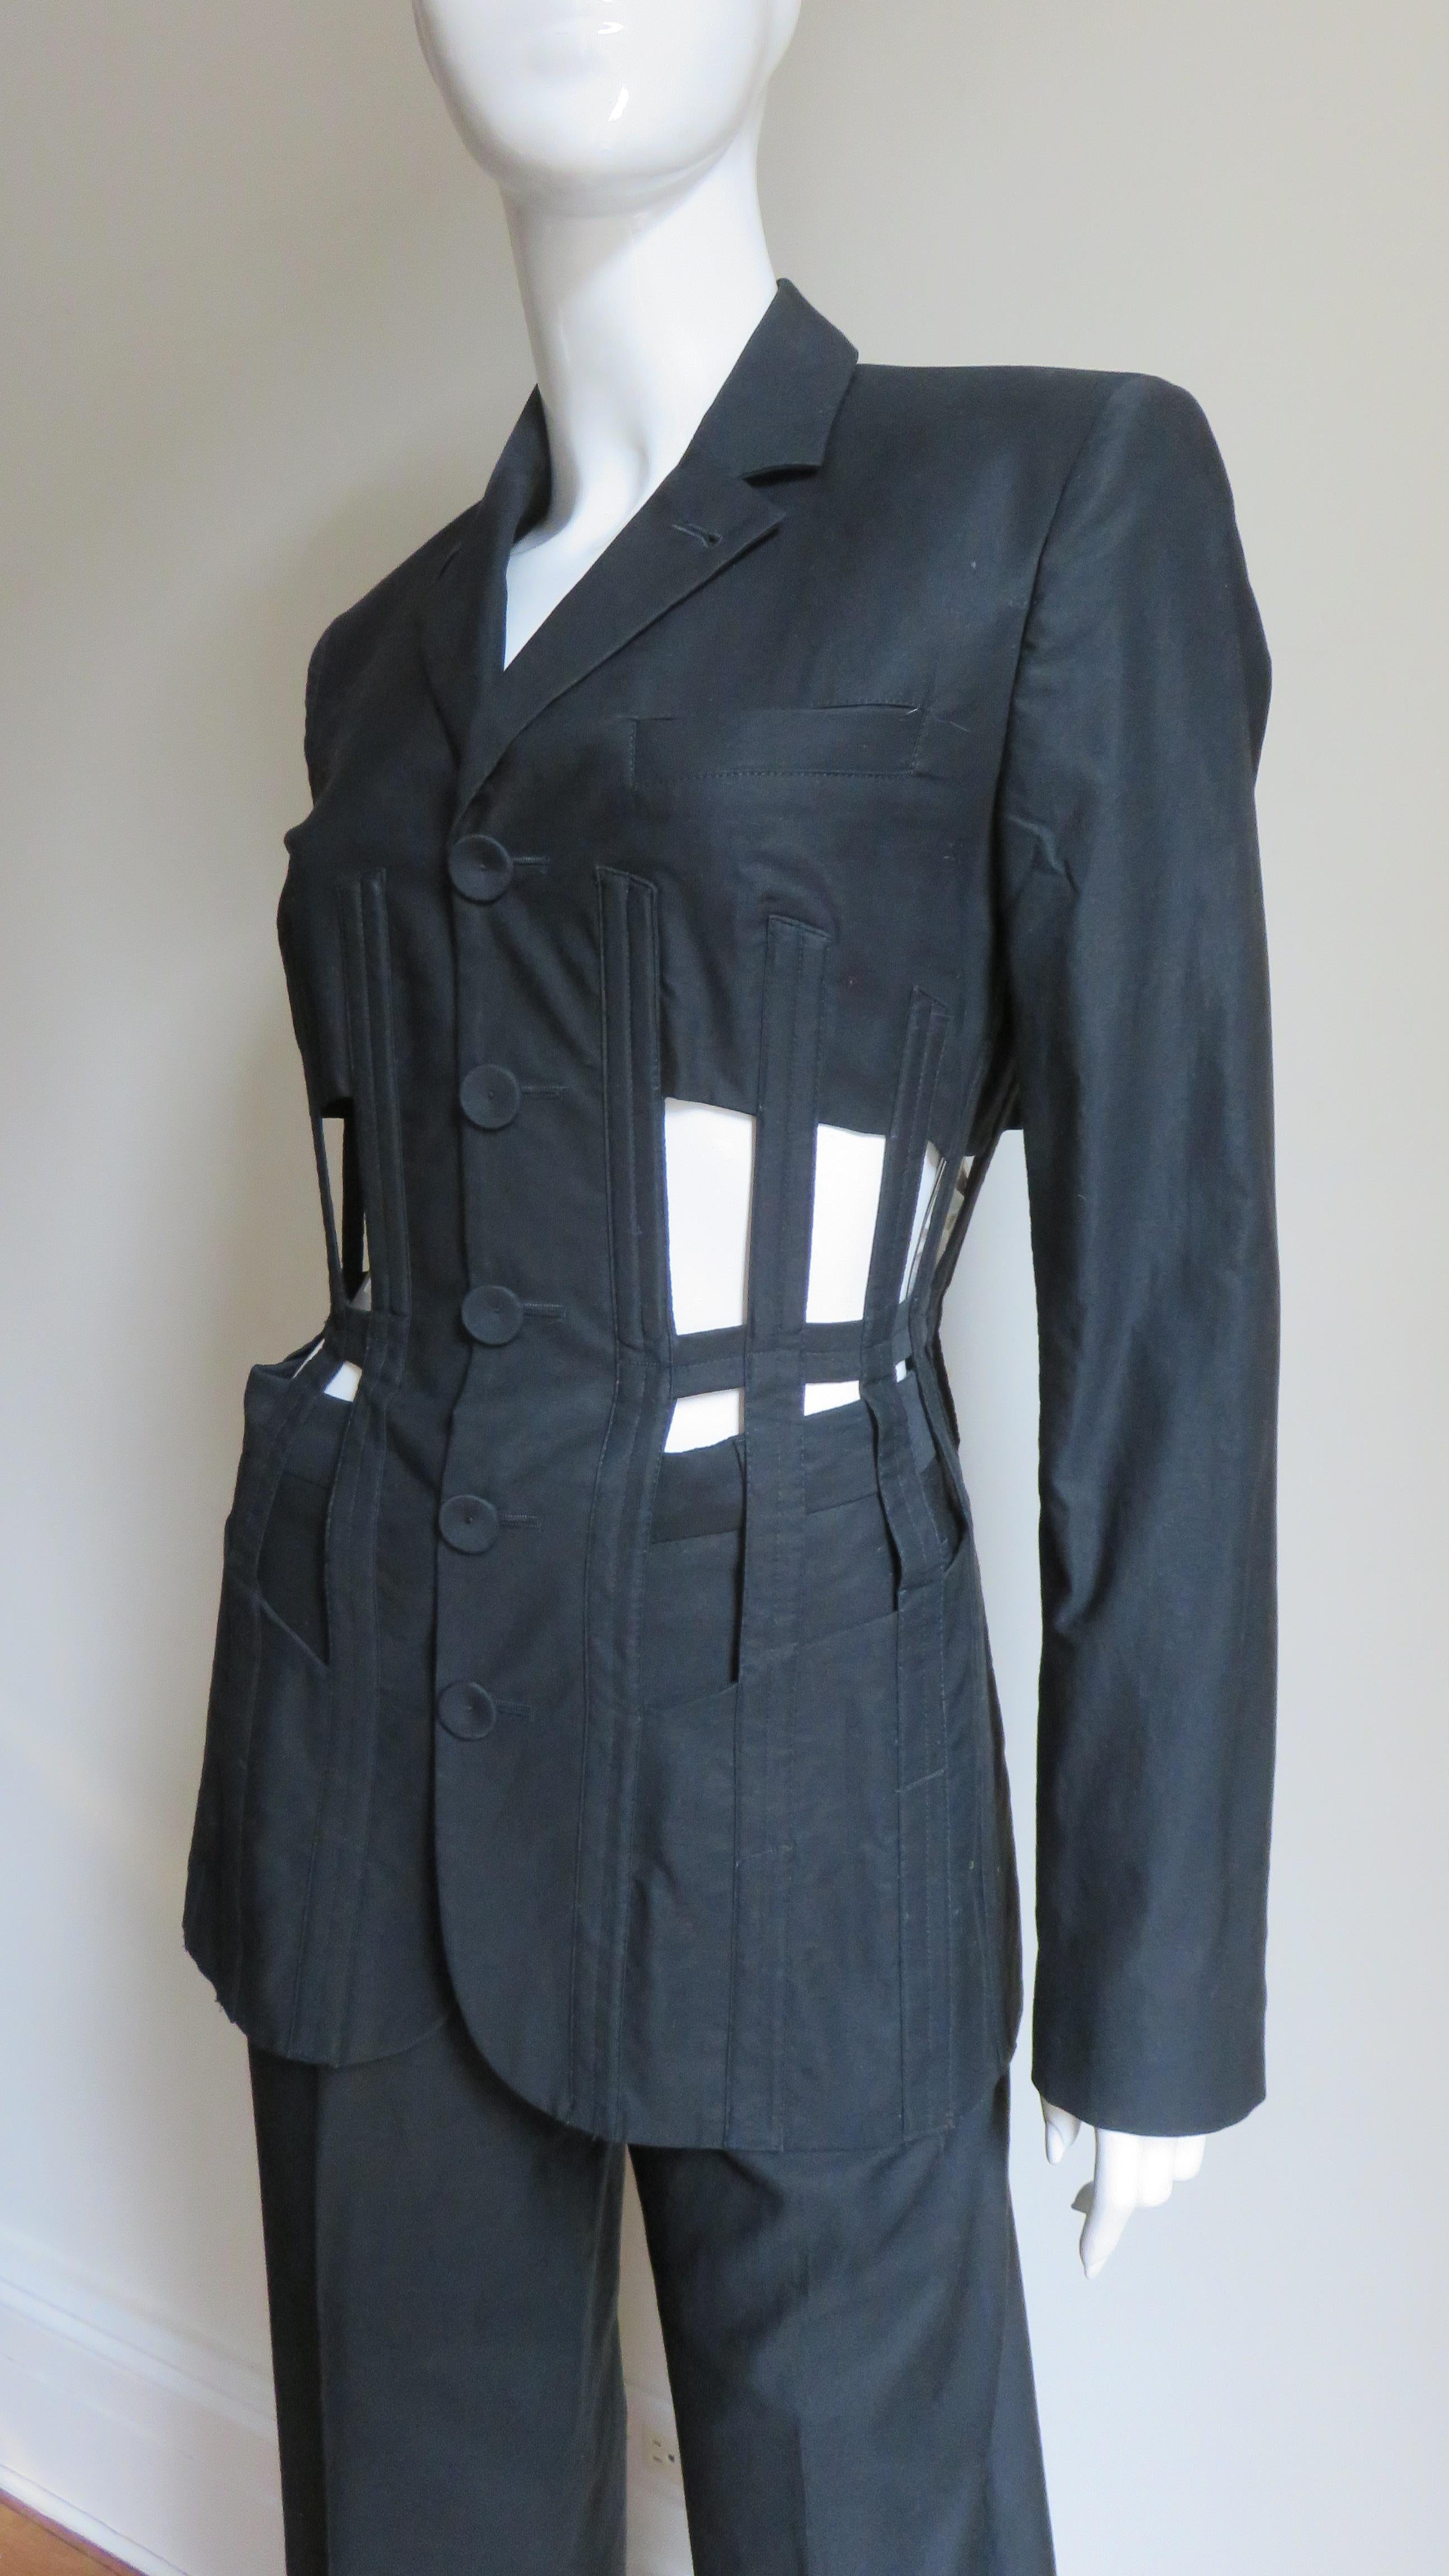 Black Jean Paul Gaultier Iconic Cage Corset lace up Jacket Pant Suit S/S 1989 For Sale